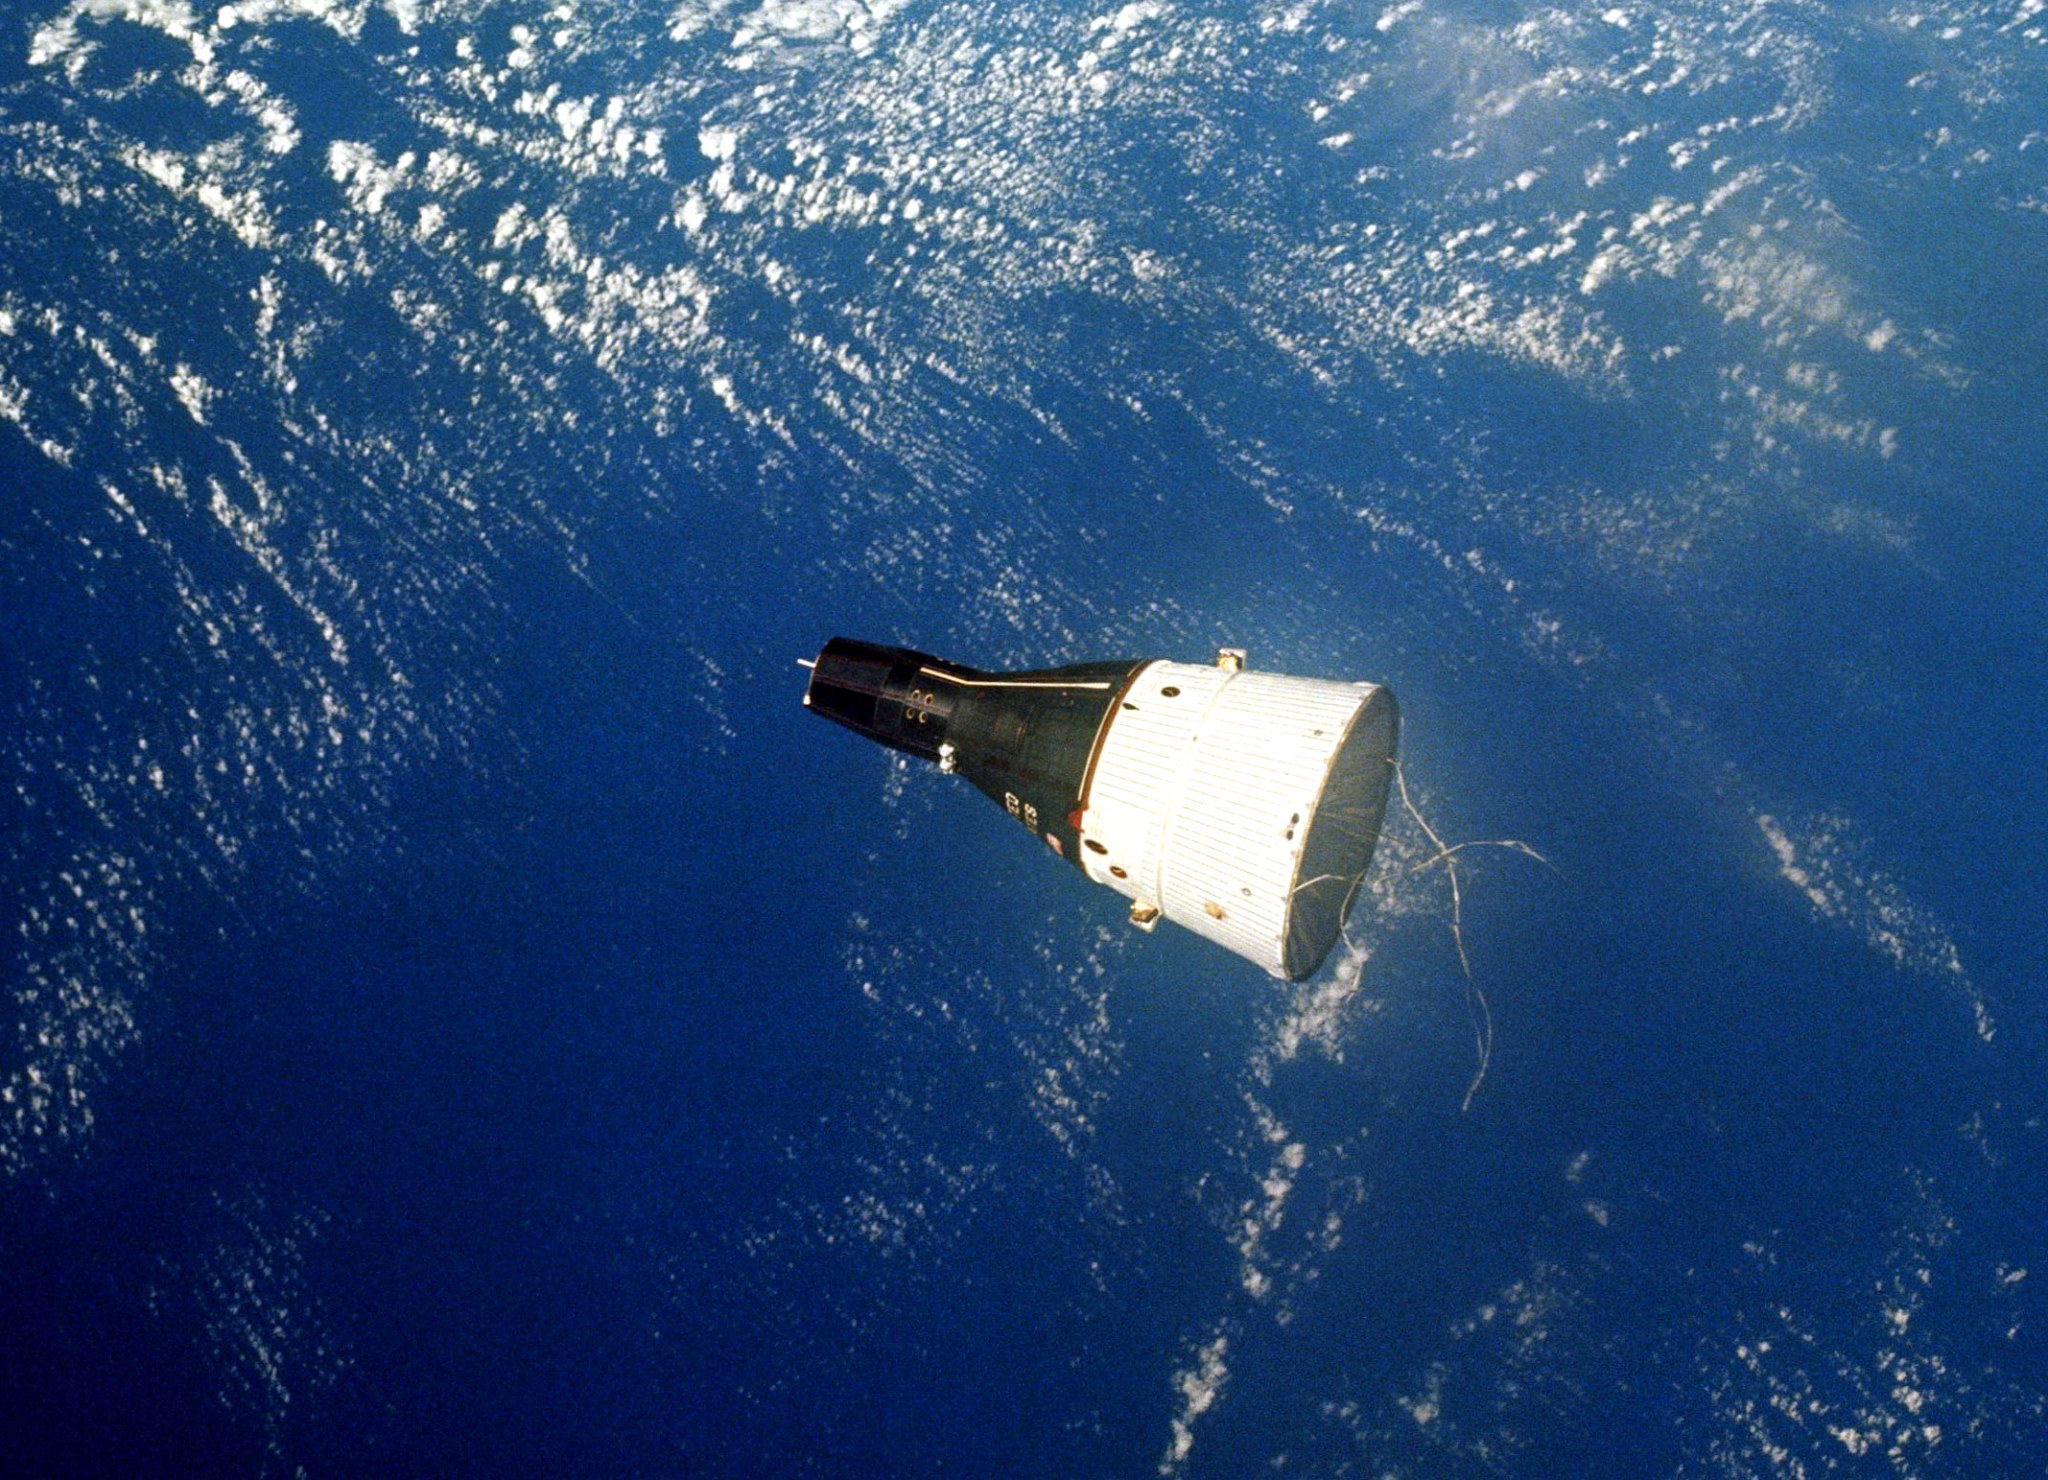 Gemini VII spacecraft